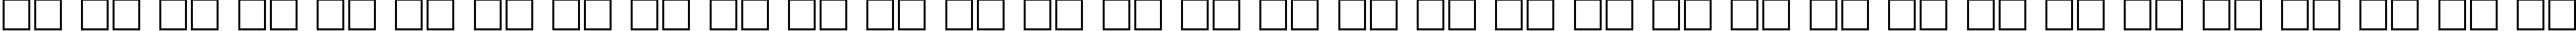 Пример написания русского алфавита шрифтом Uk_Decor